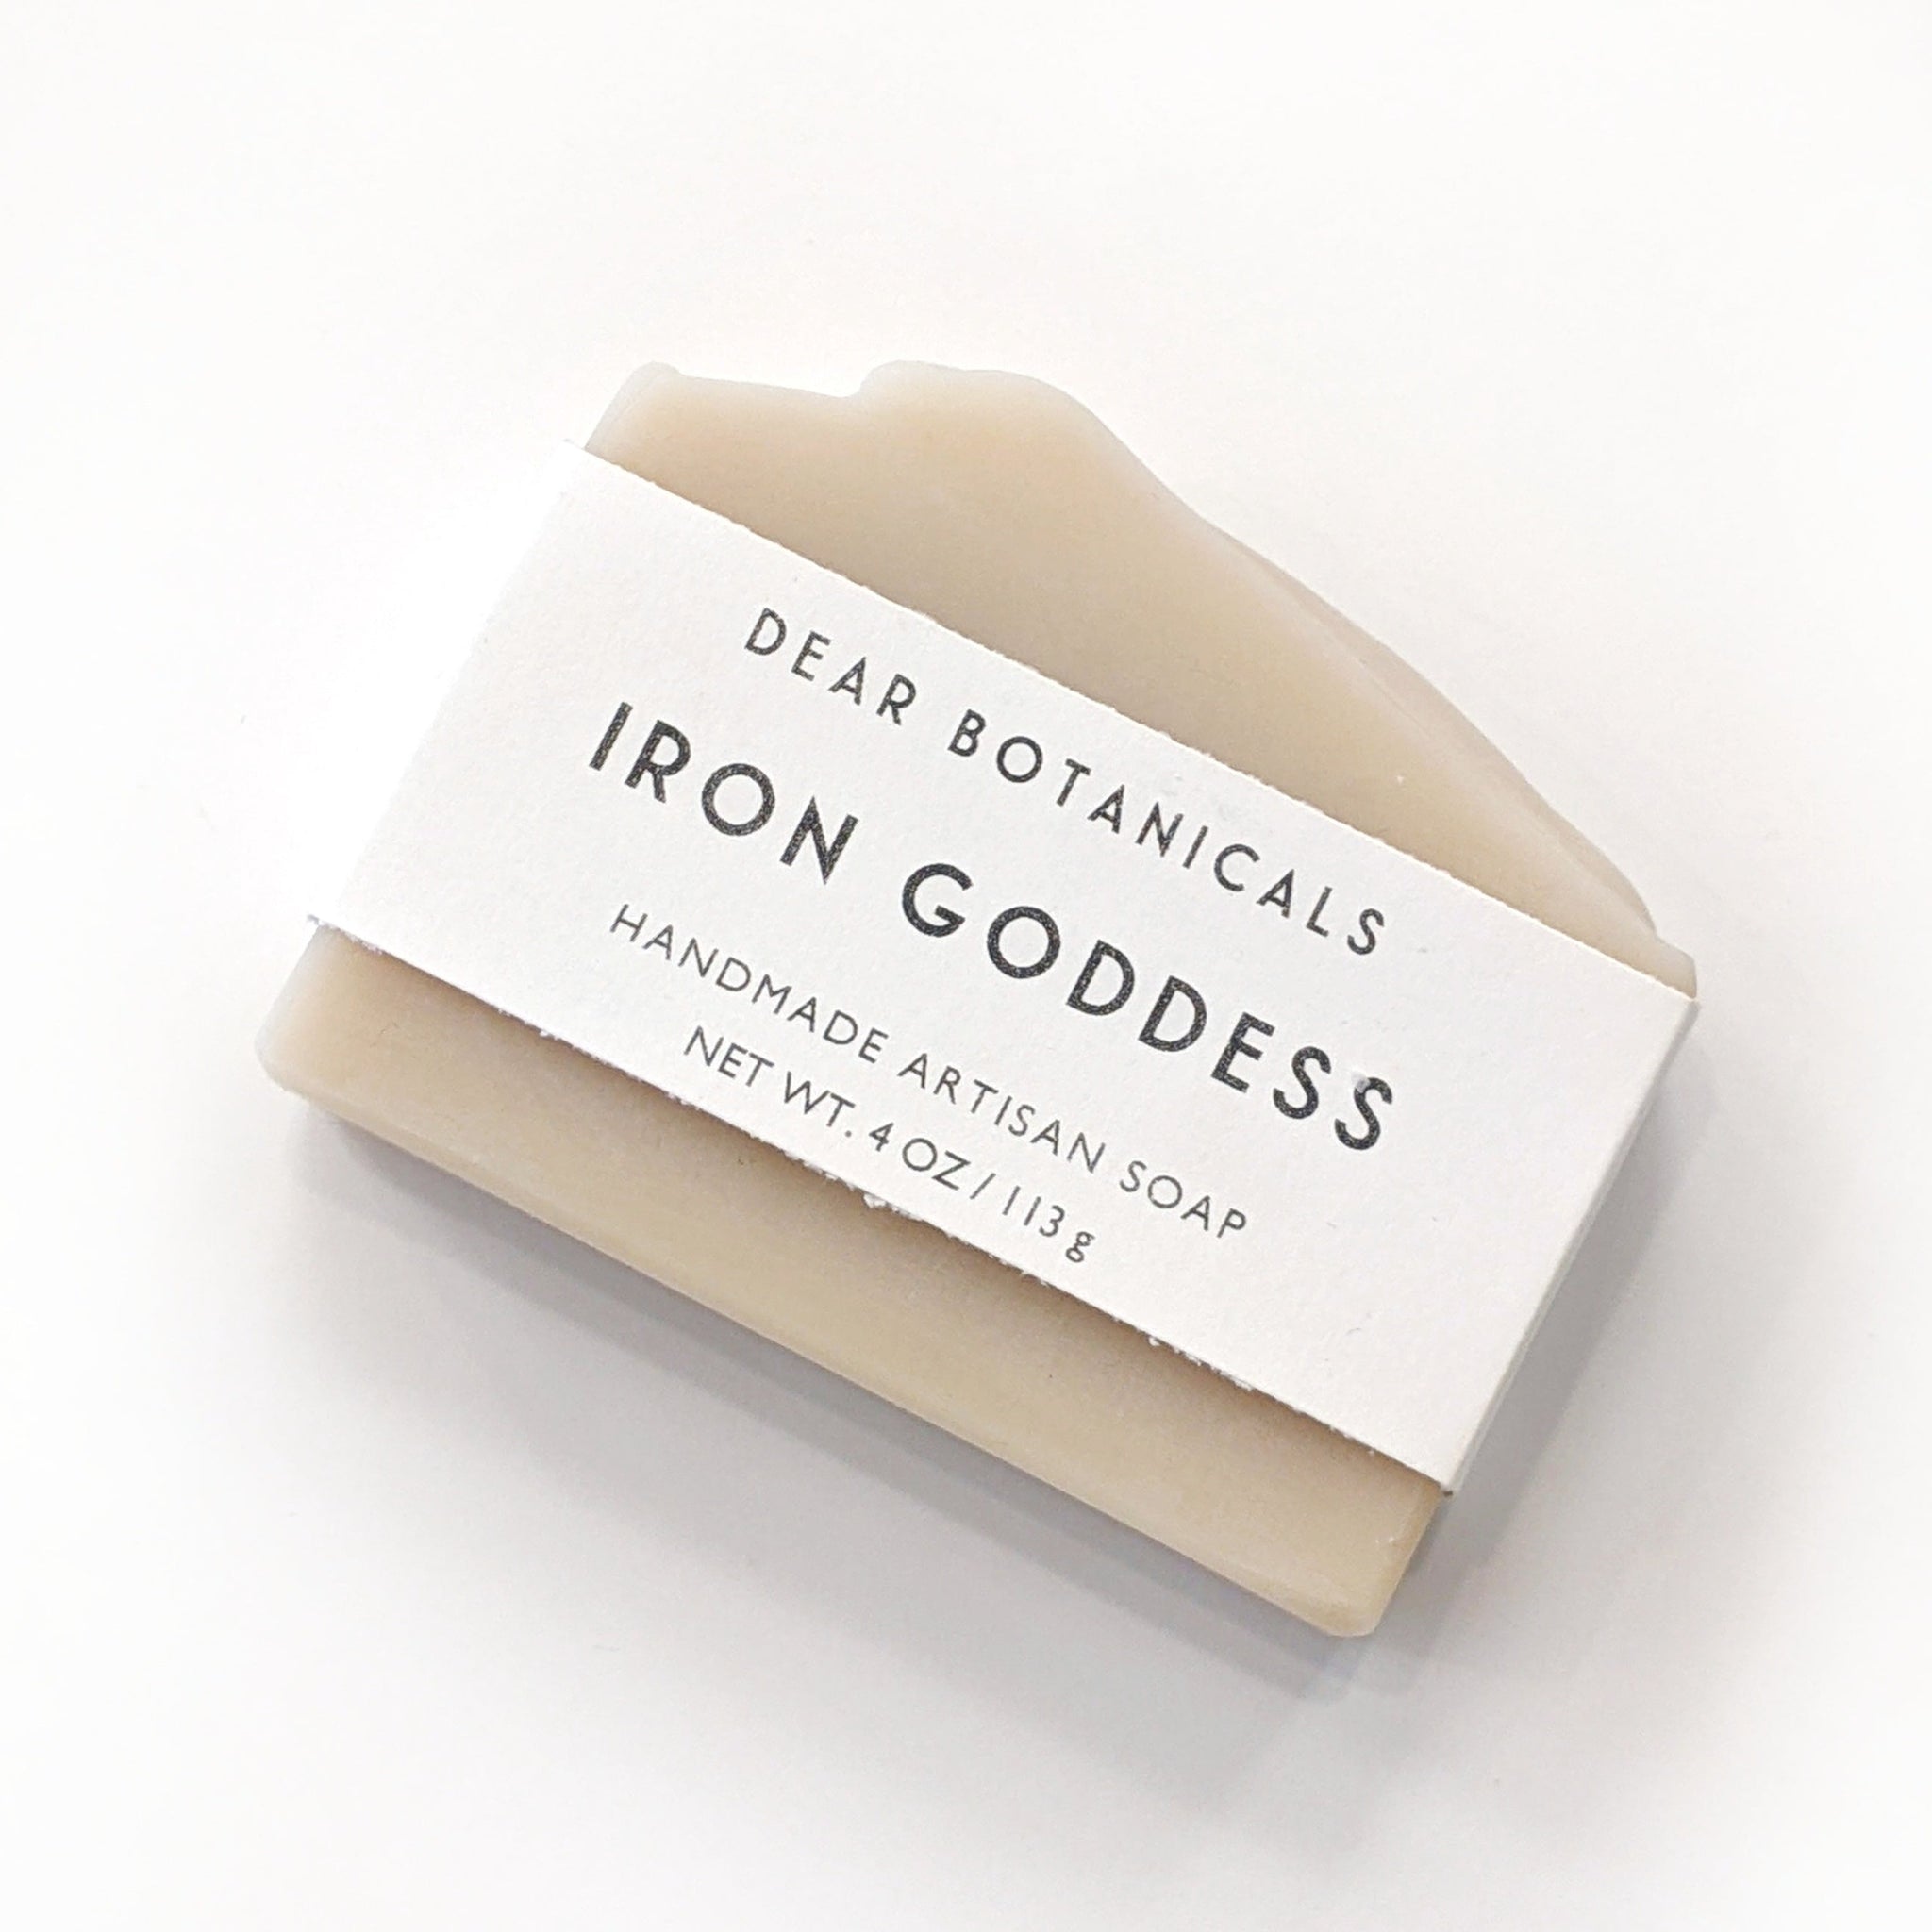 Dear Botanicals Soap - Iron Goddess